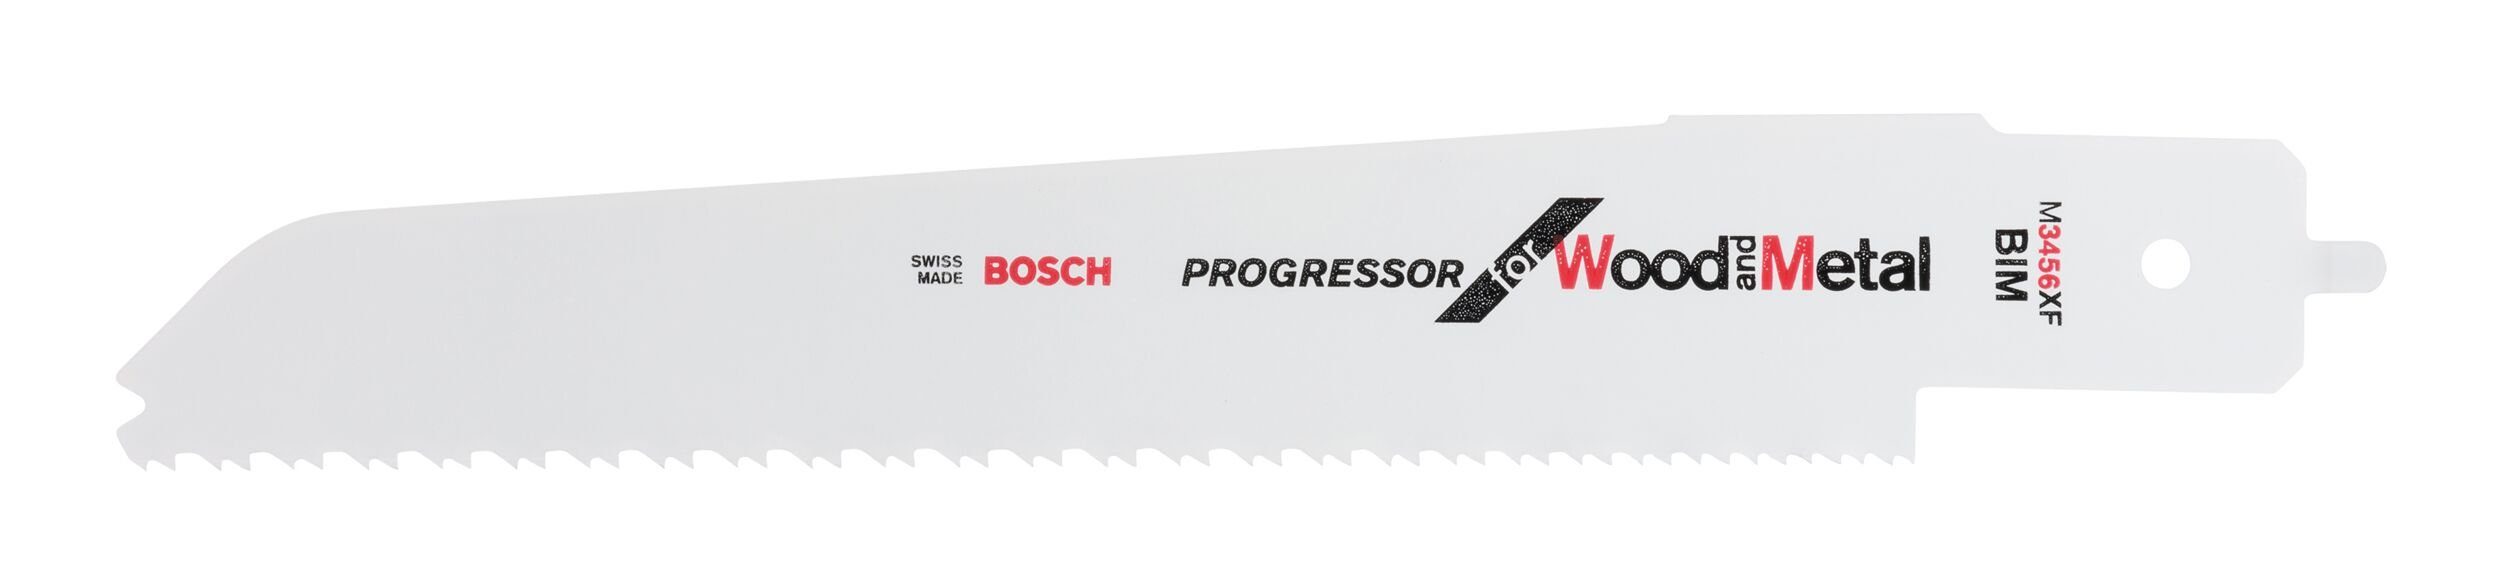 M E and 500 Wood PFZ Metal Progressor für BOSCH for XF Säbelsägeblatt, 3456